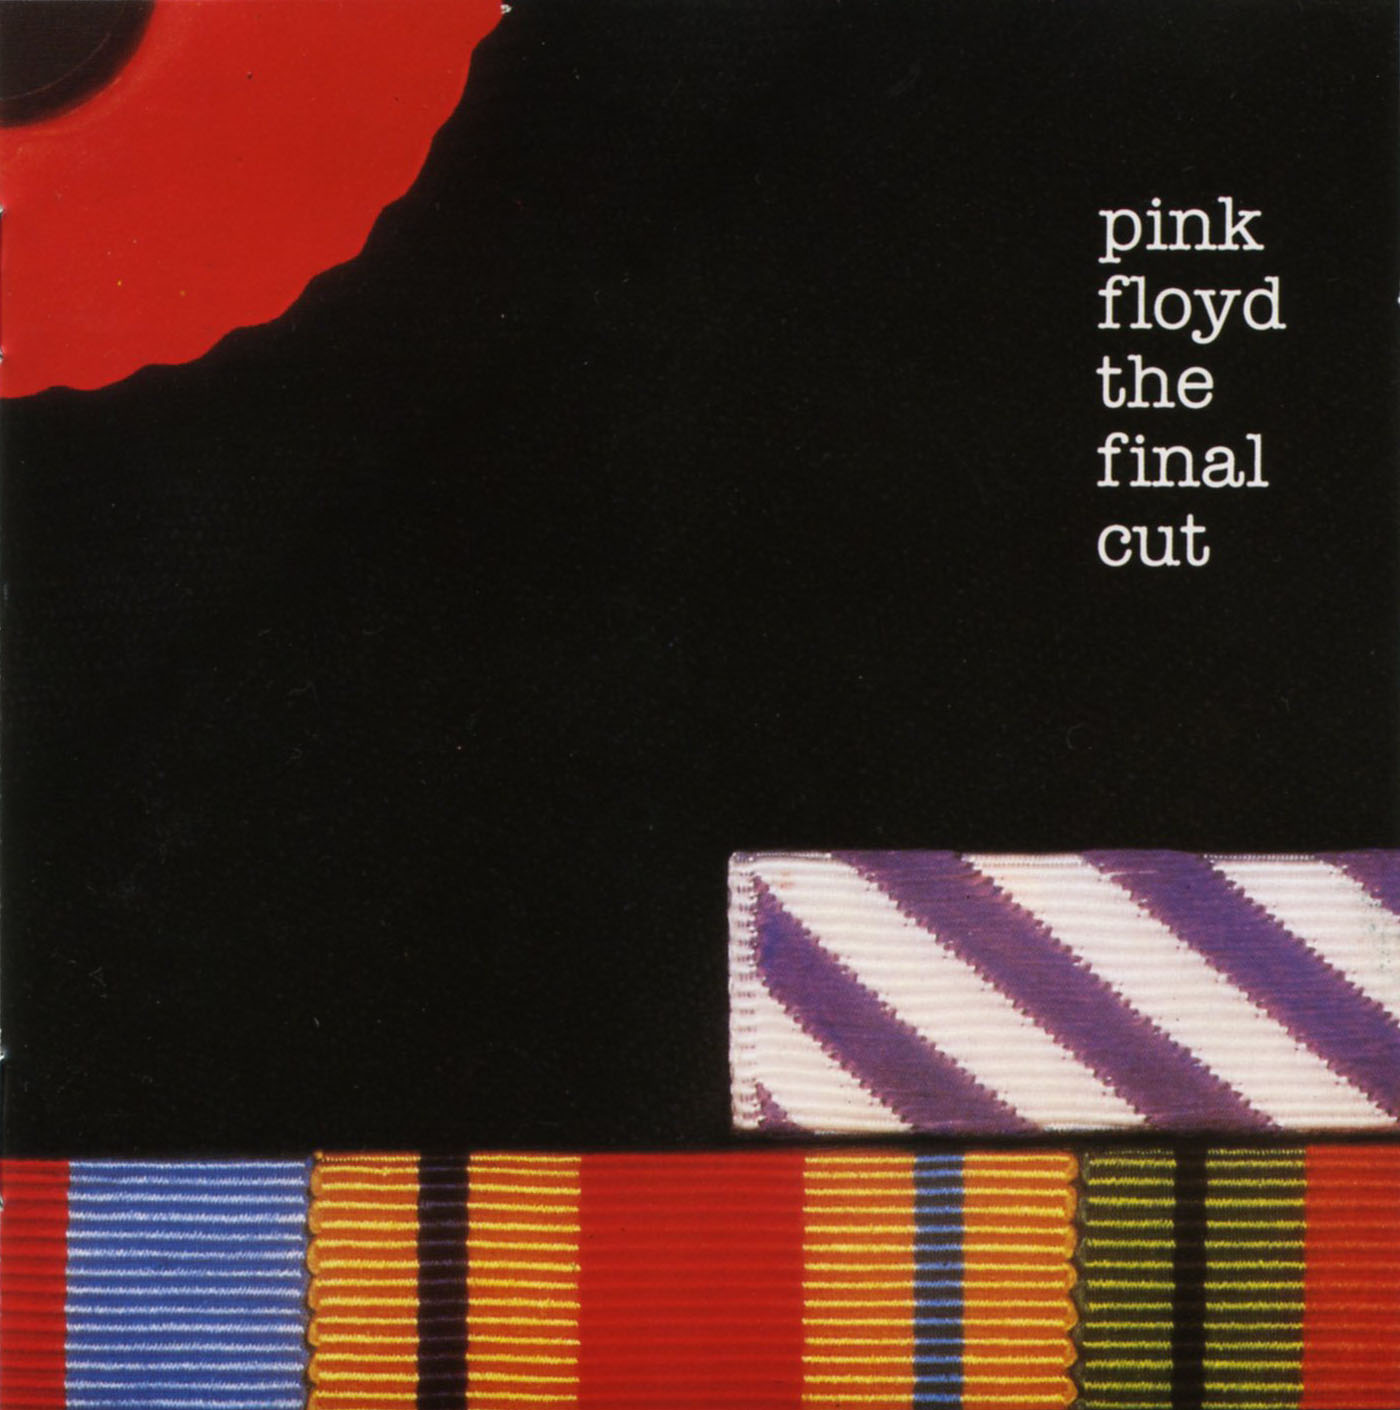 Capas de Discos Pink+Floyd+-+The+Final+Cut+-+Front